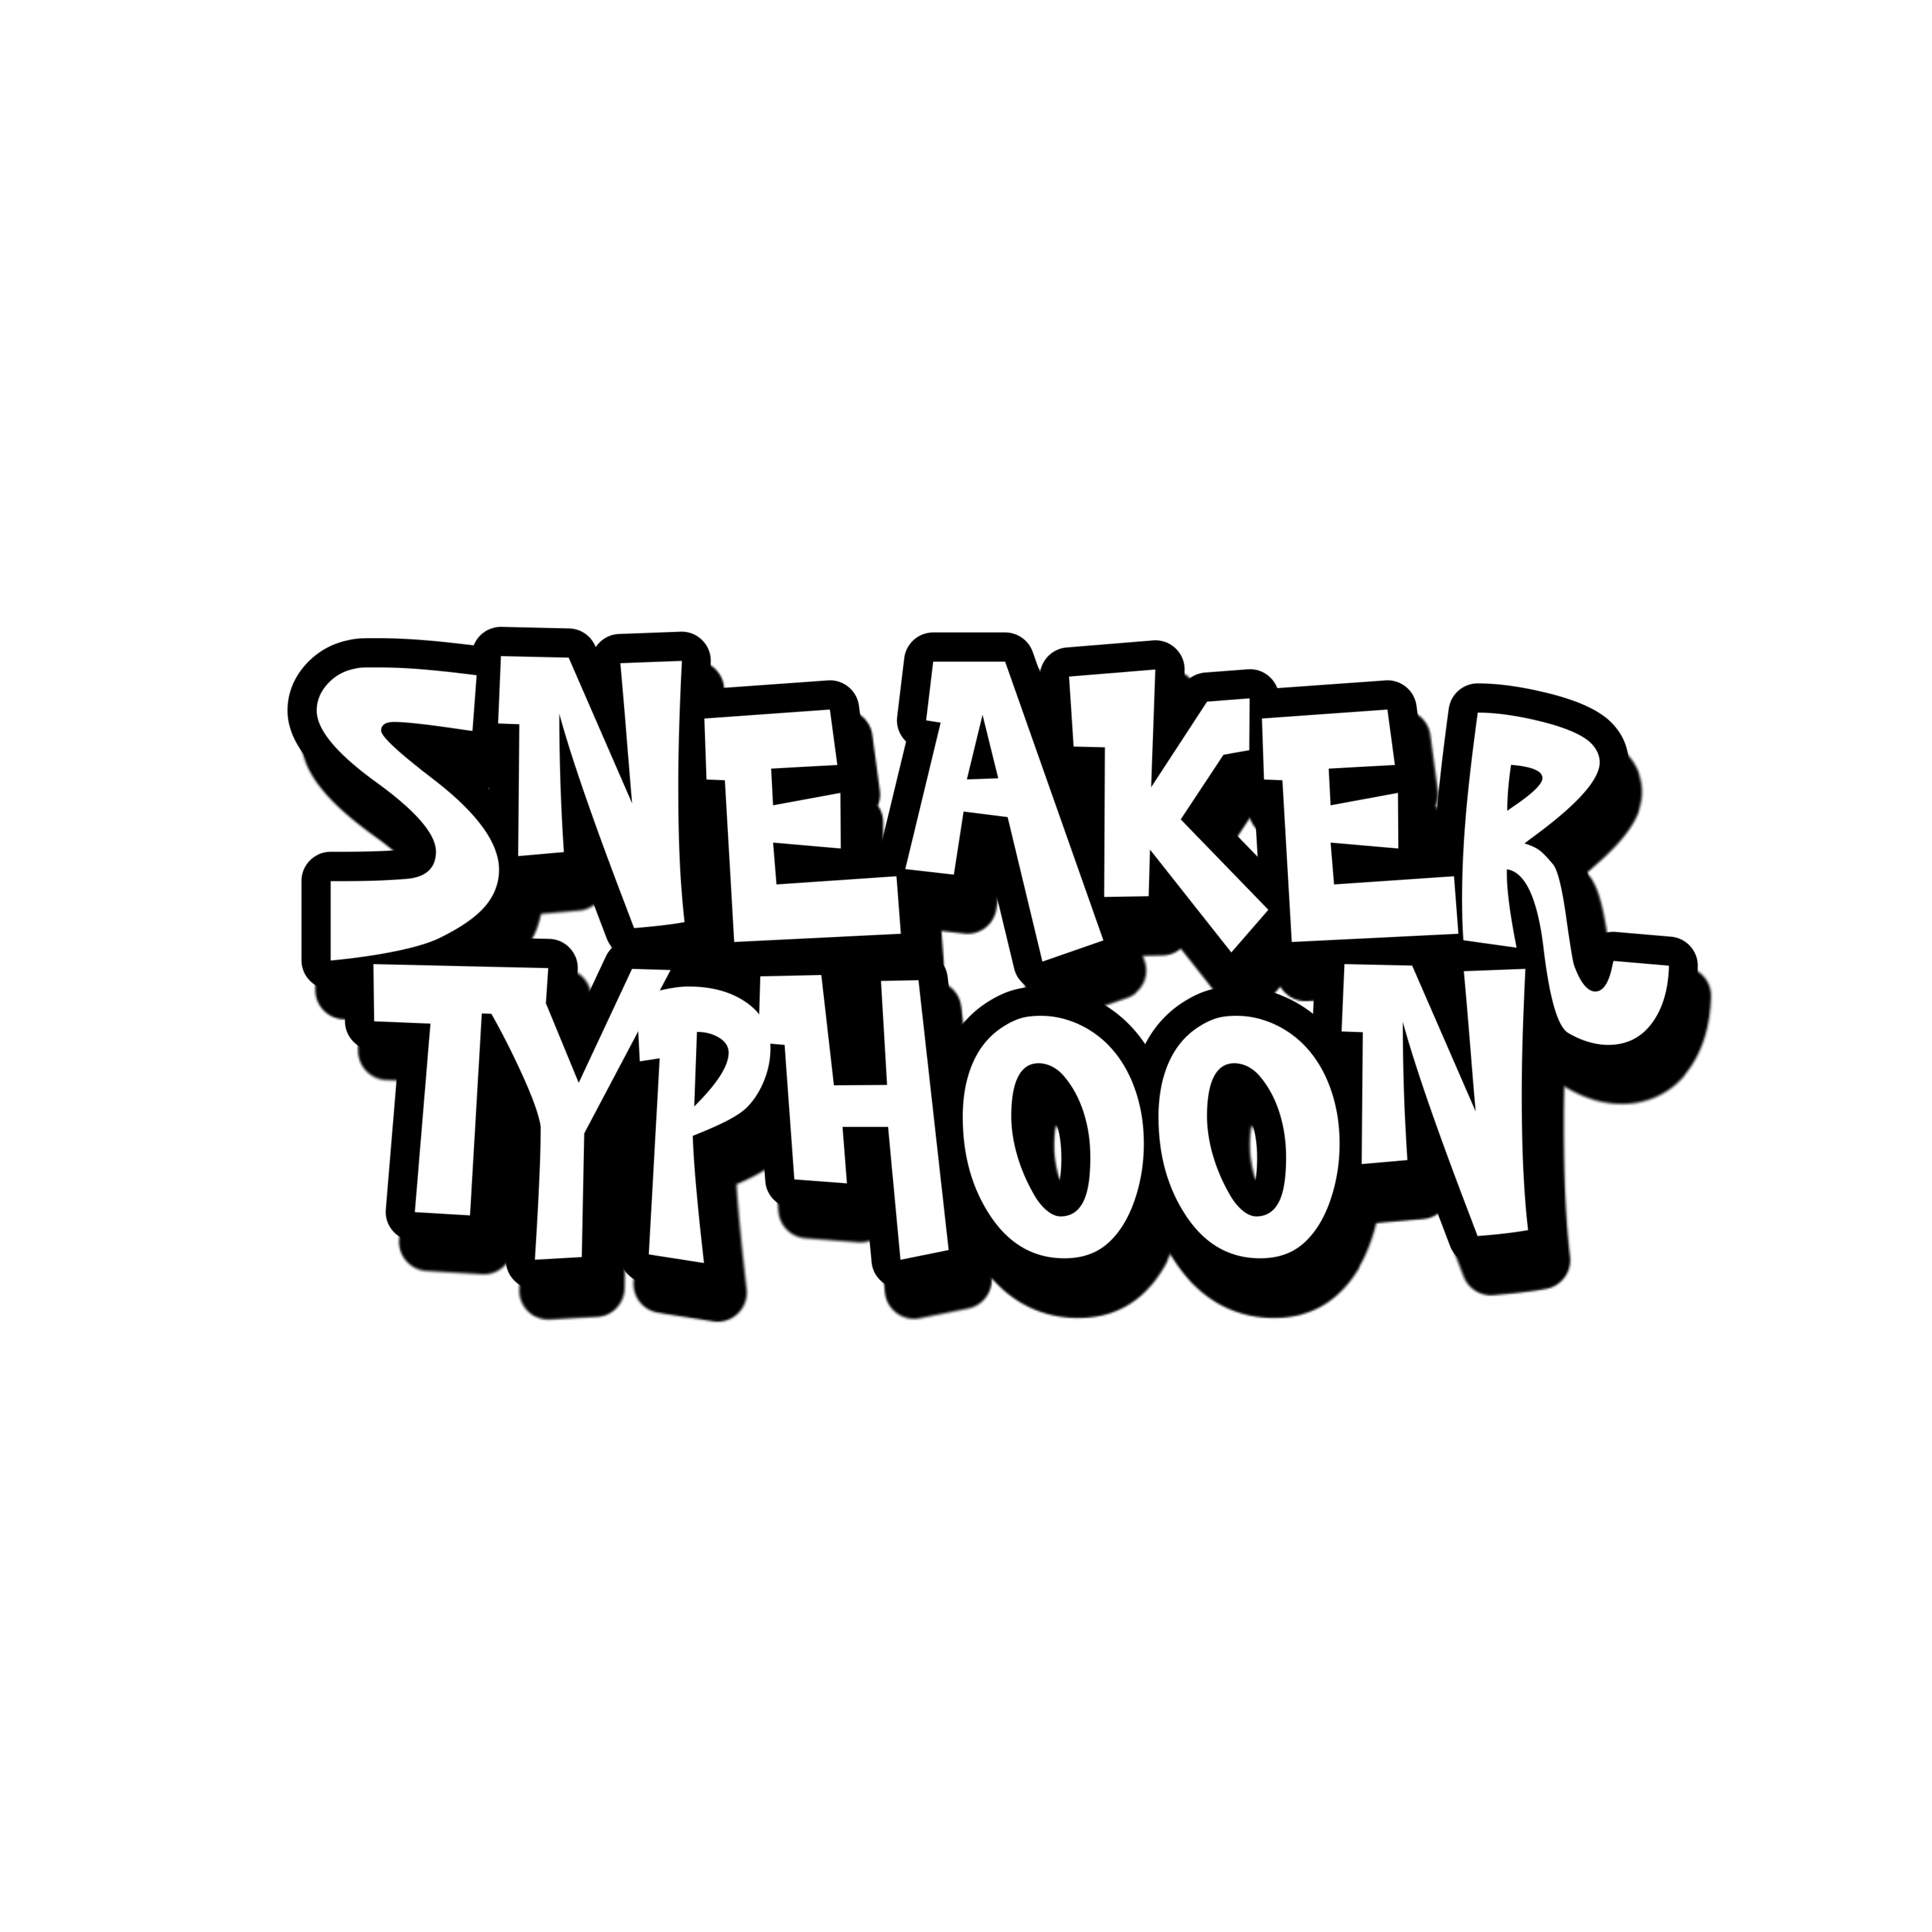 Sneaker Typhoon